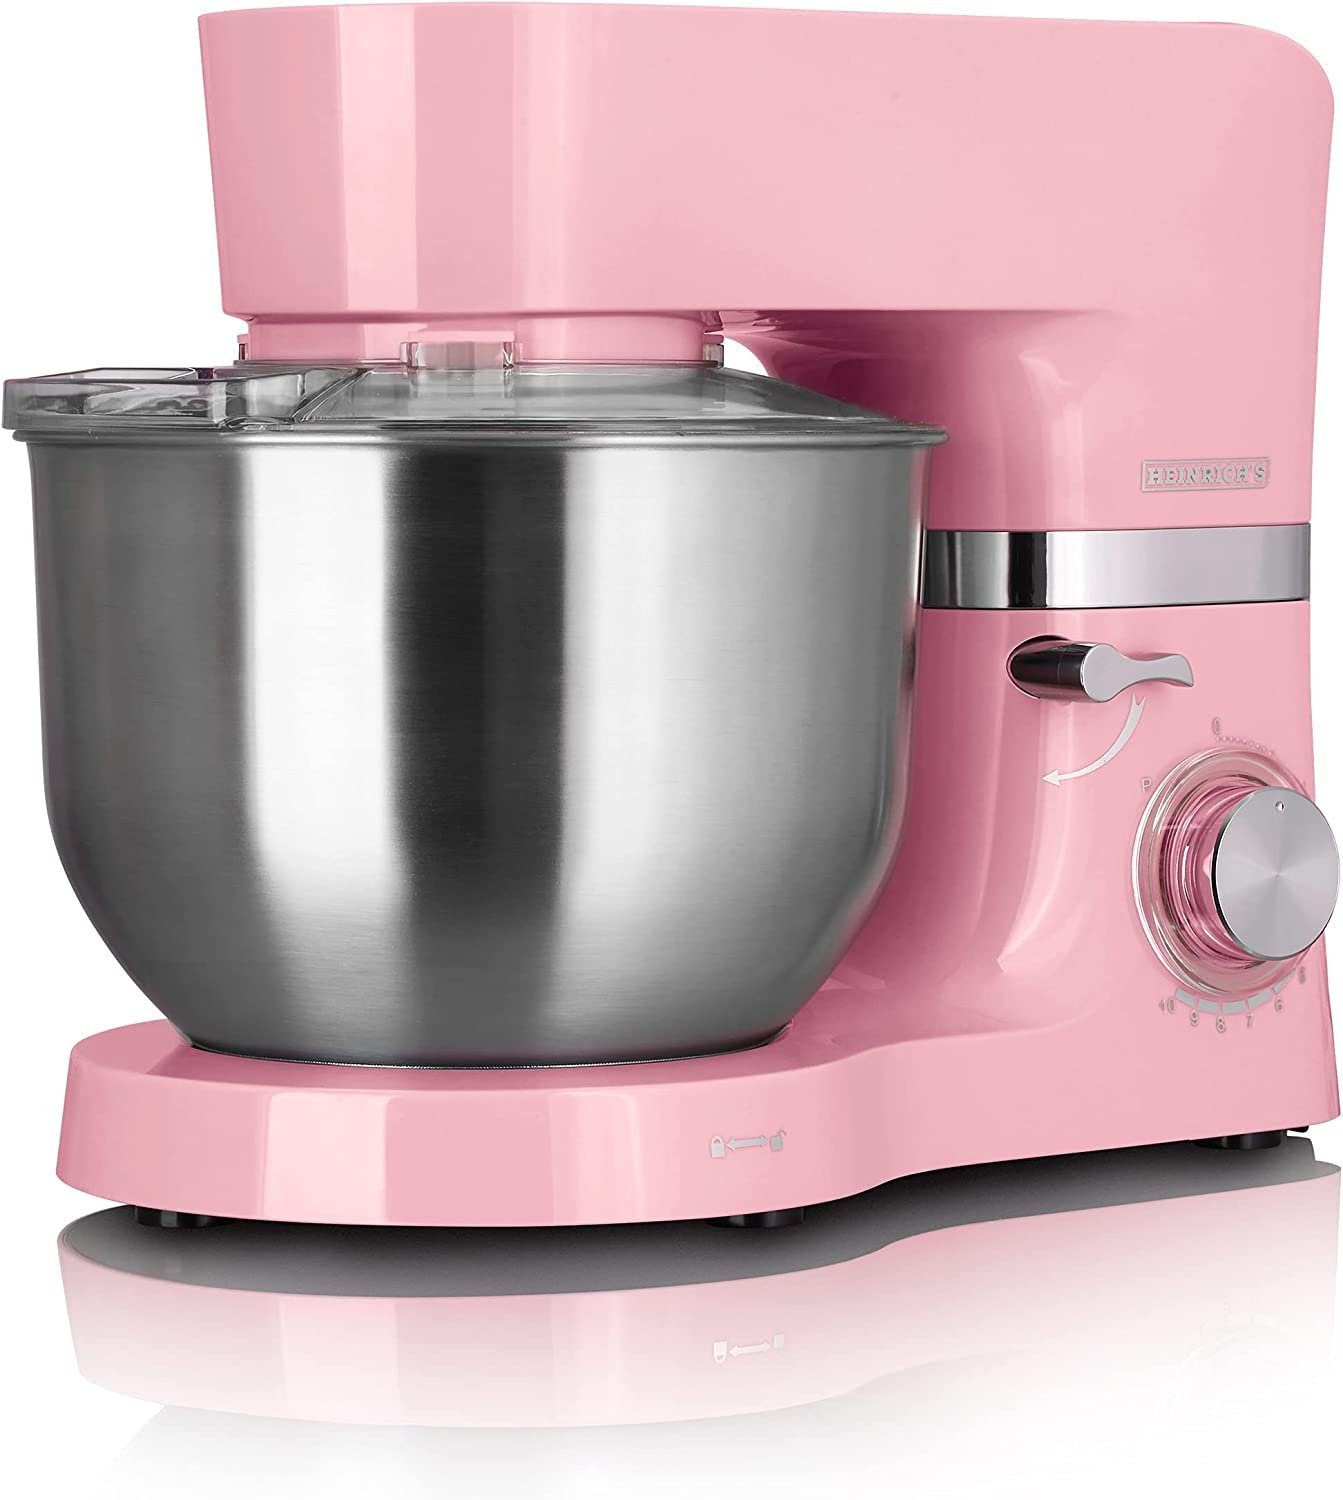 Heinrich´s Multifunktions-Küchenmaschine HKM 6278, 1300 W, 6,20 l Schüssel, XL 6,2L Edelstahlschüssel mit Spritzschutz, 3 Aufsätze, 11 Stufen Pastell Rosa